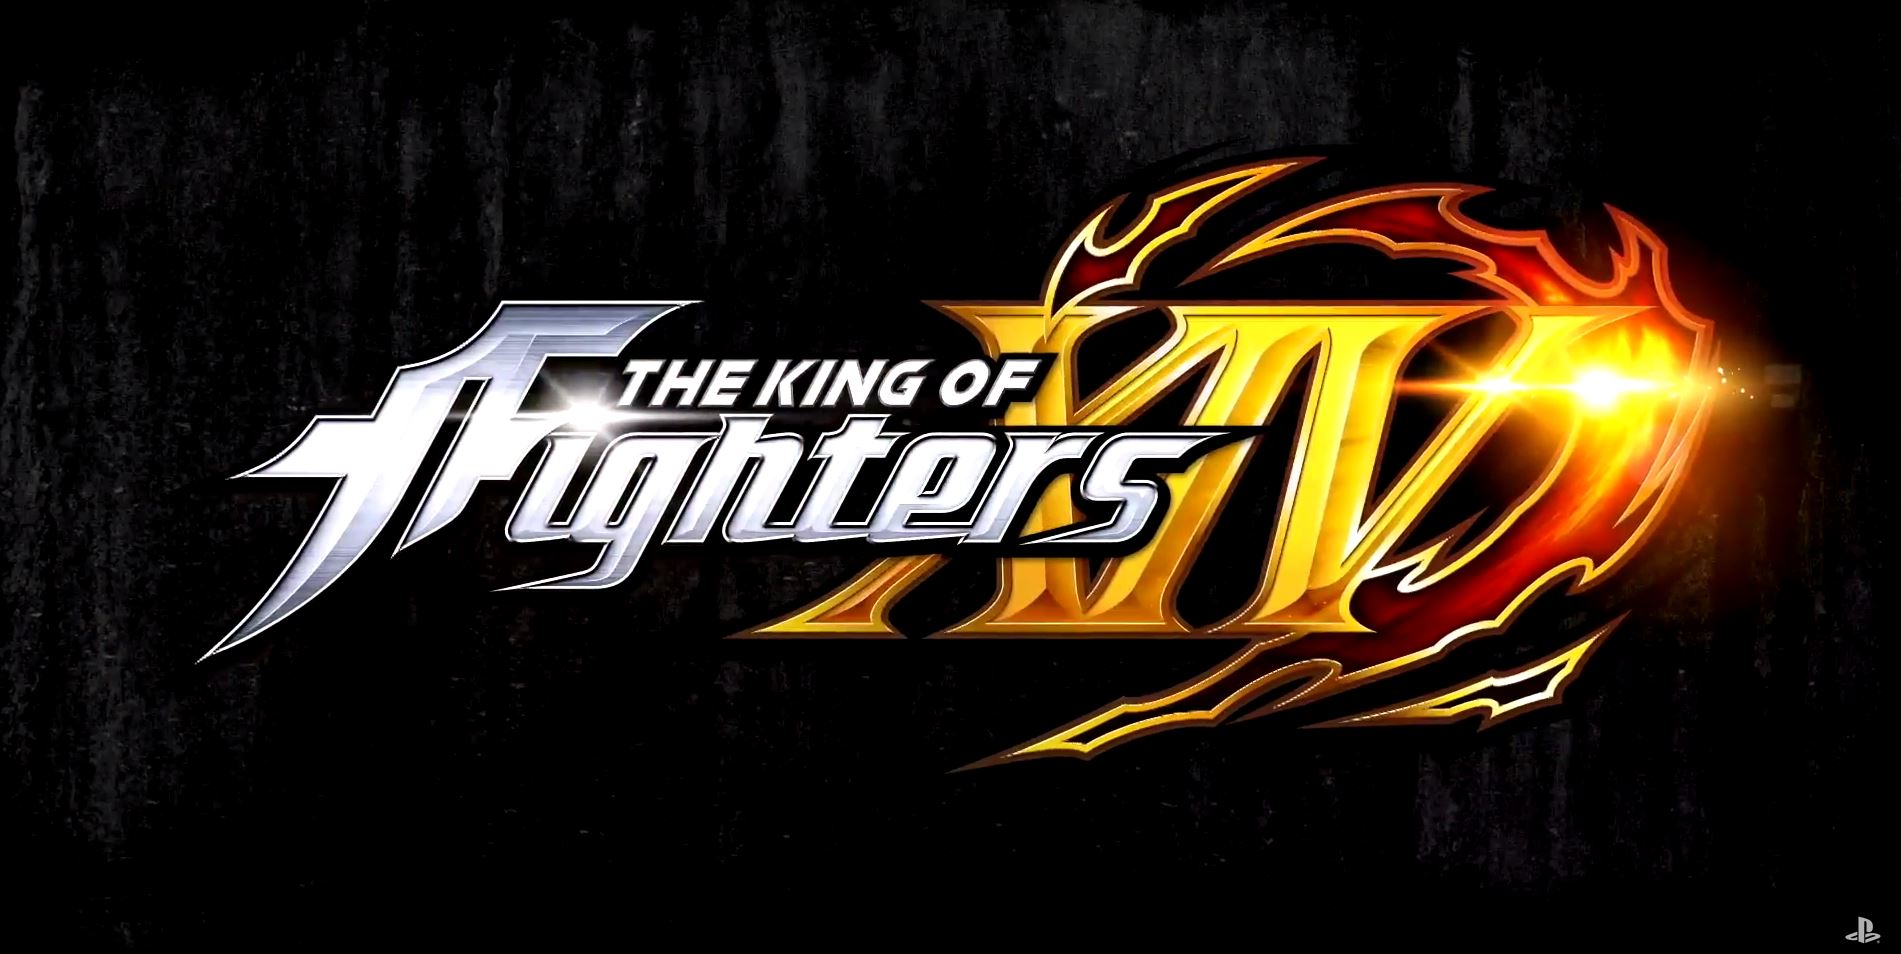 King of Fighters XIV receberá Vanessa